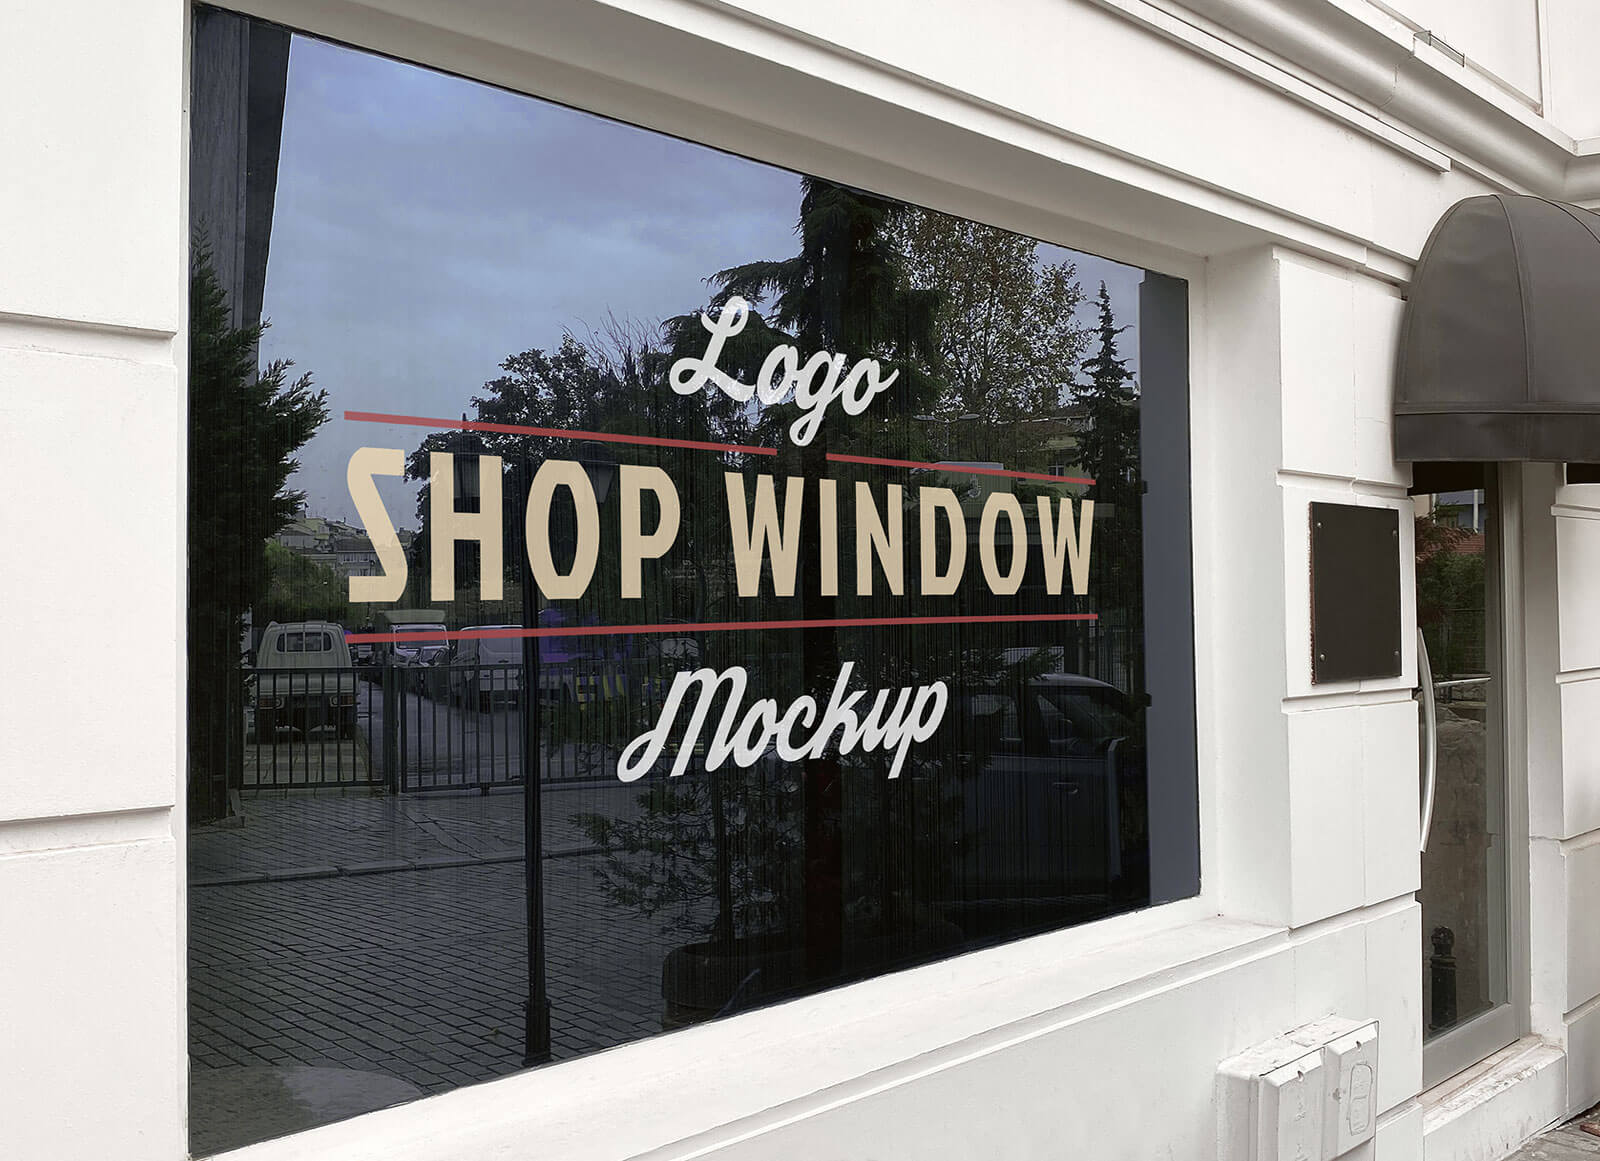 House / Shop Glass Window Signage Logo Mockup Set